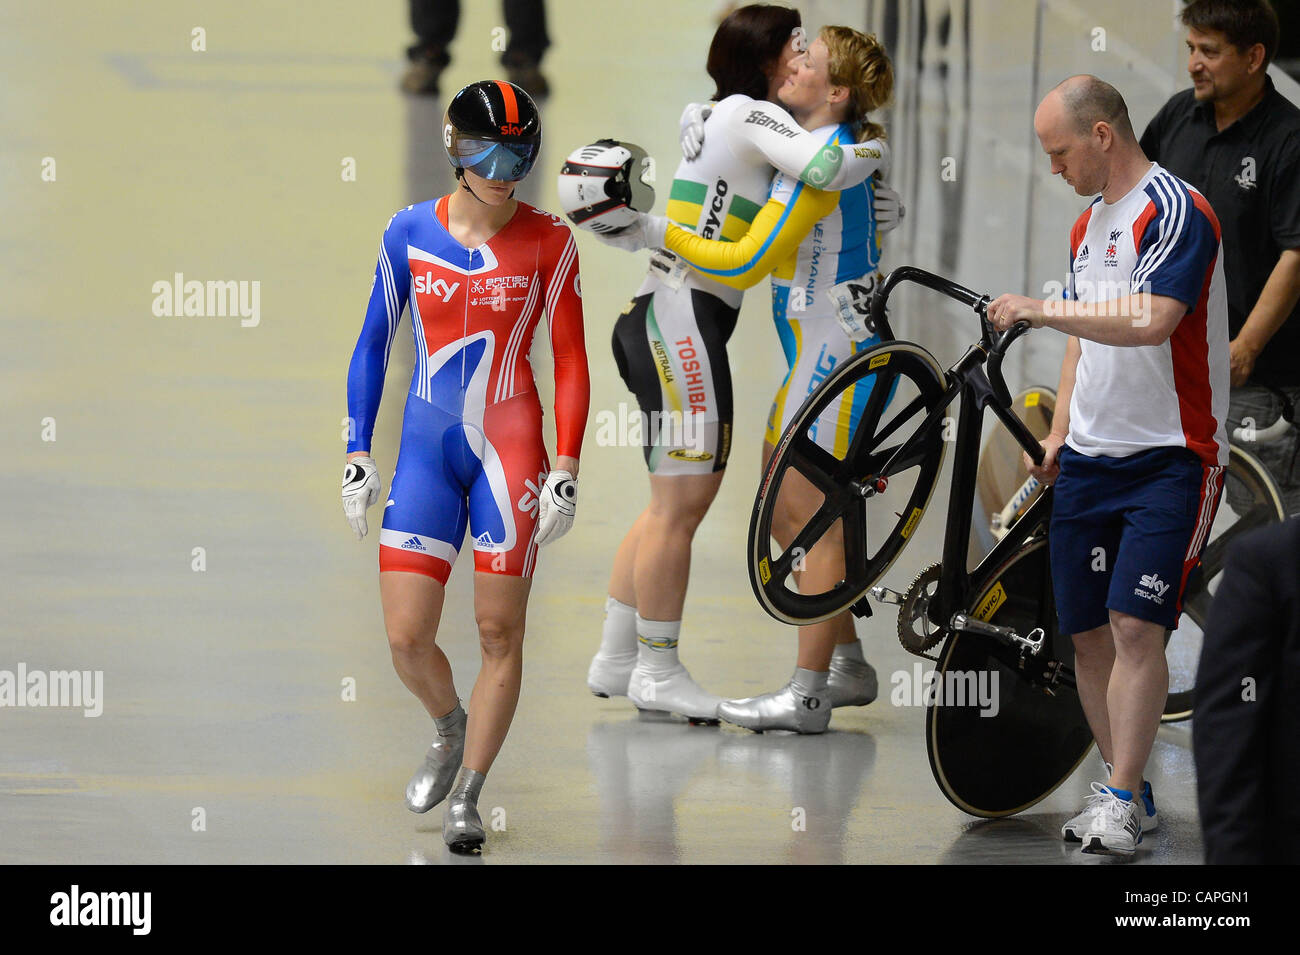 VICTORIA PENDLETON (GBR) si prepara per la gara per la medaglia d'oro nella donna evento Sprint al giorno 3 del 2012 UCI via del Campionato del Mondo di Ciclismo a Hisense Arena di Melbourne, Australia. Foto Stock